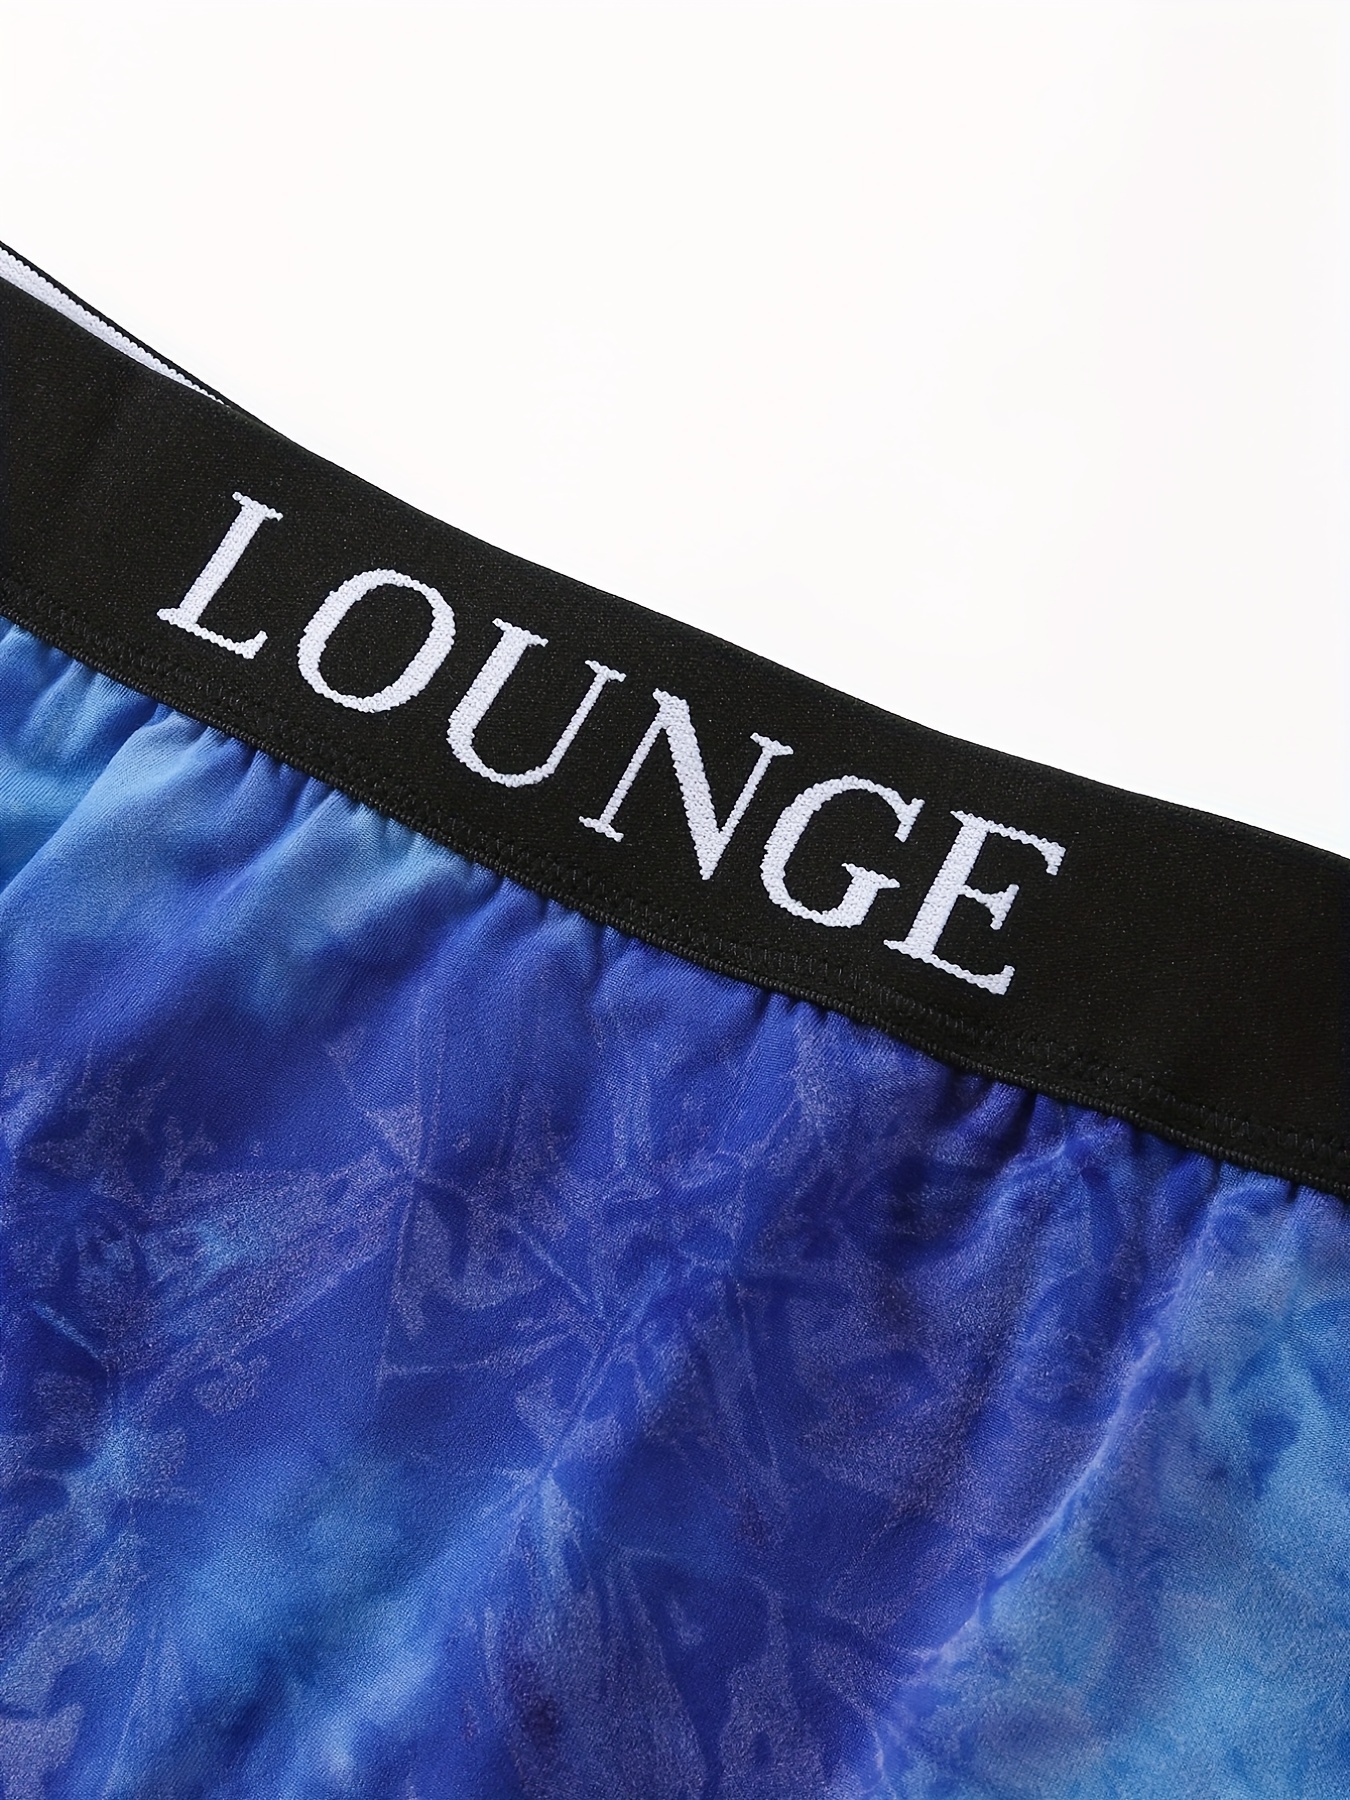 Lounge Underwear - Lounge Underwear Set on Designer Wardrobe